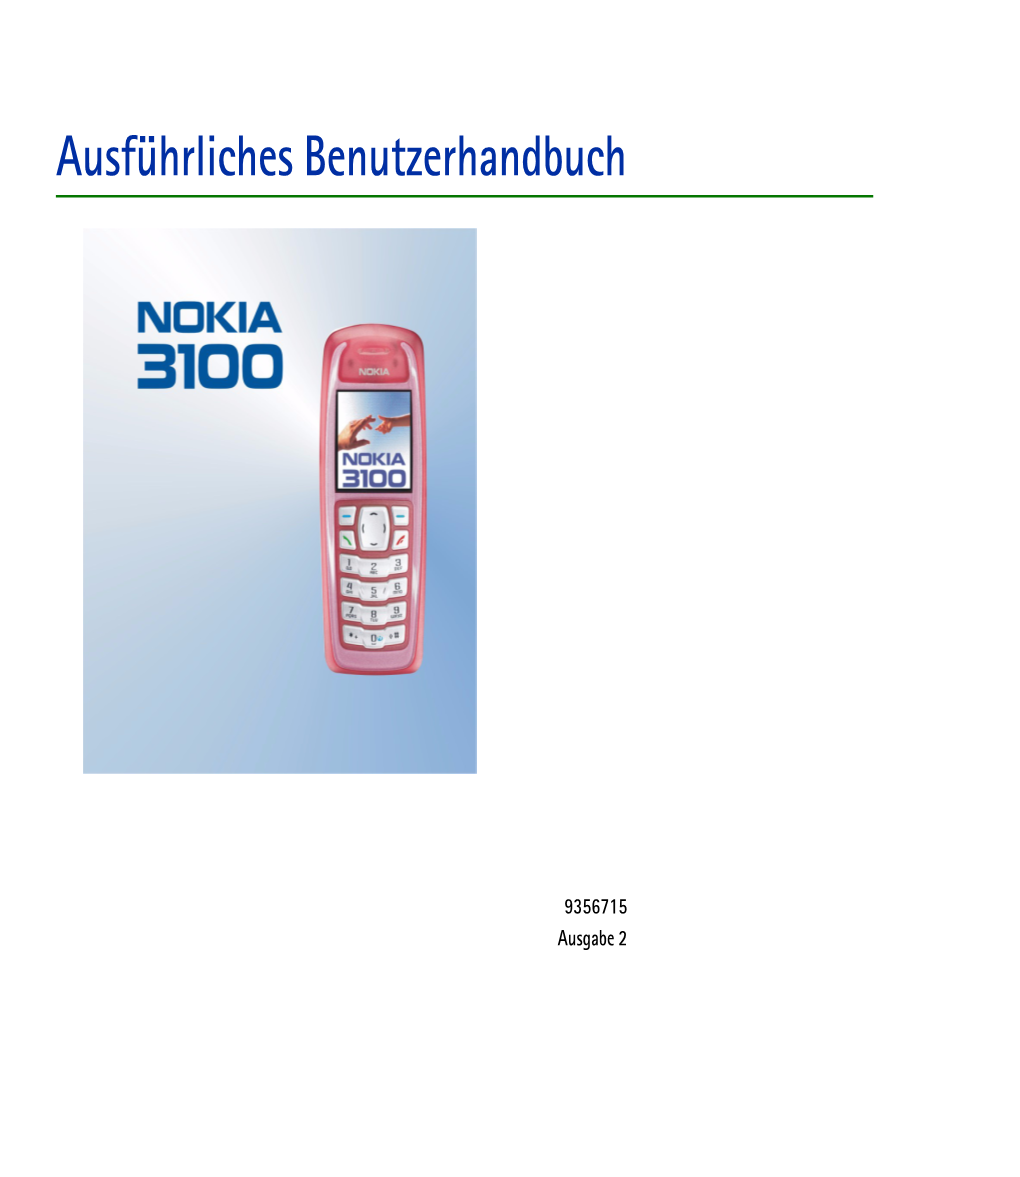 Nokia 3100 Enthält Zahlreiche Funktionen, Die Für Den Täglichen Gebrauch Sehr Nützlich Sind, Z